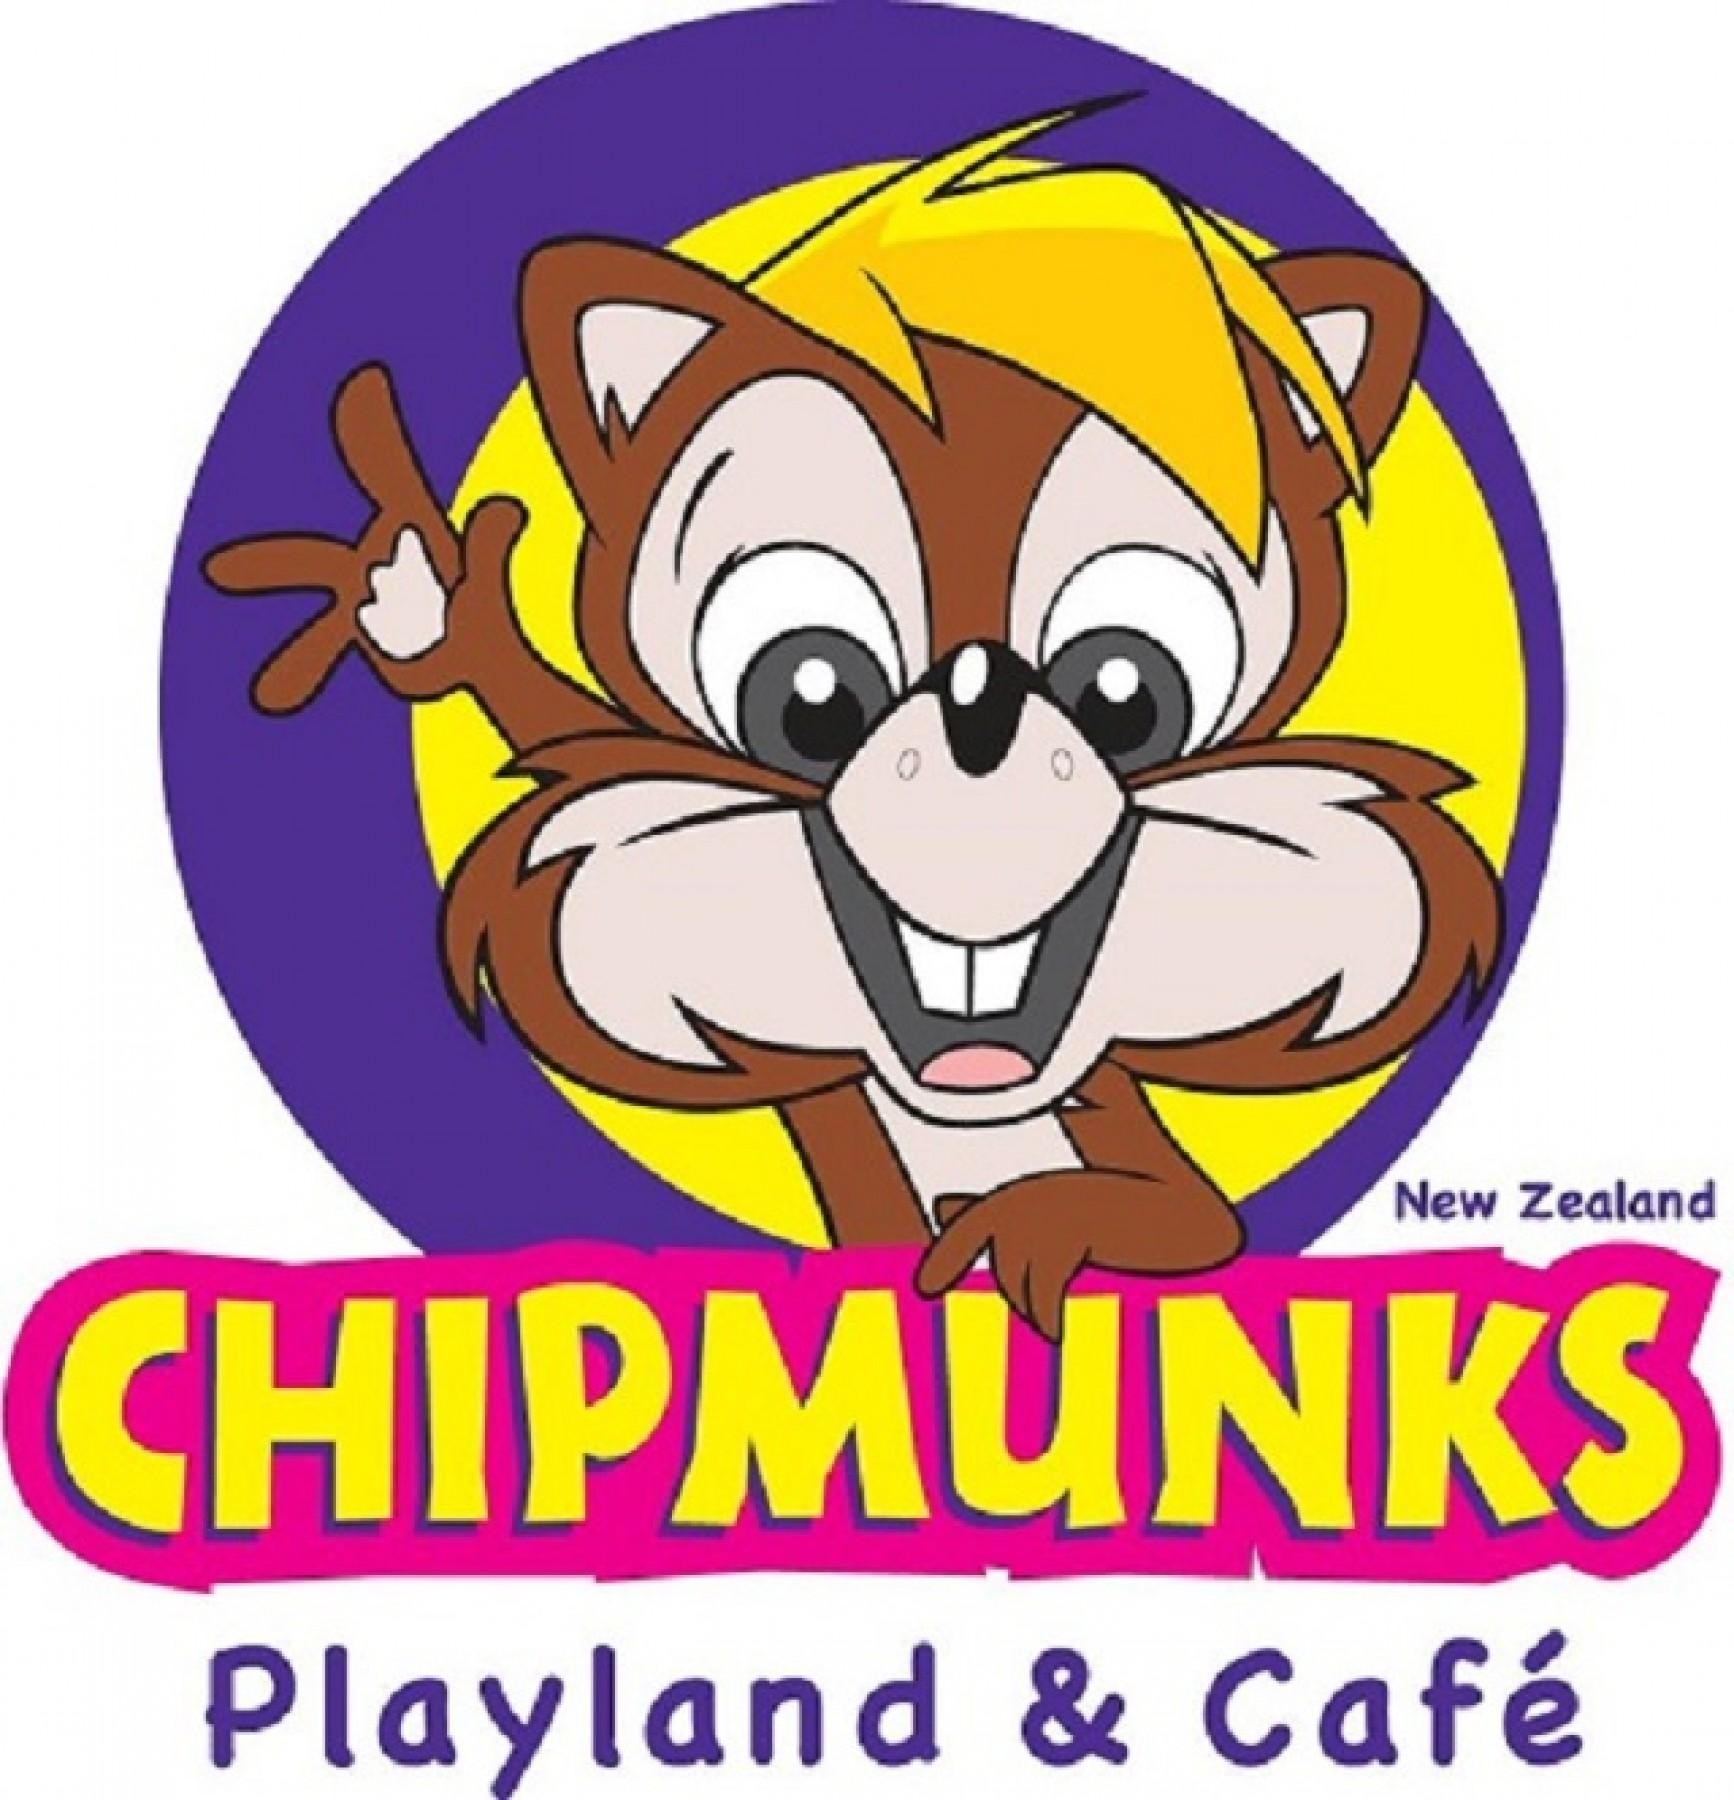 Established Children's Playland & Café Franchise ...Business For Sale